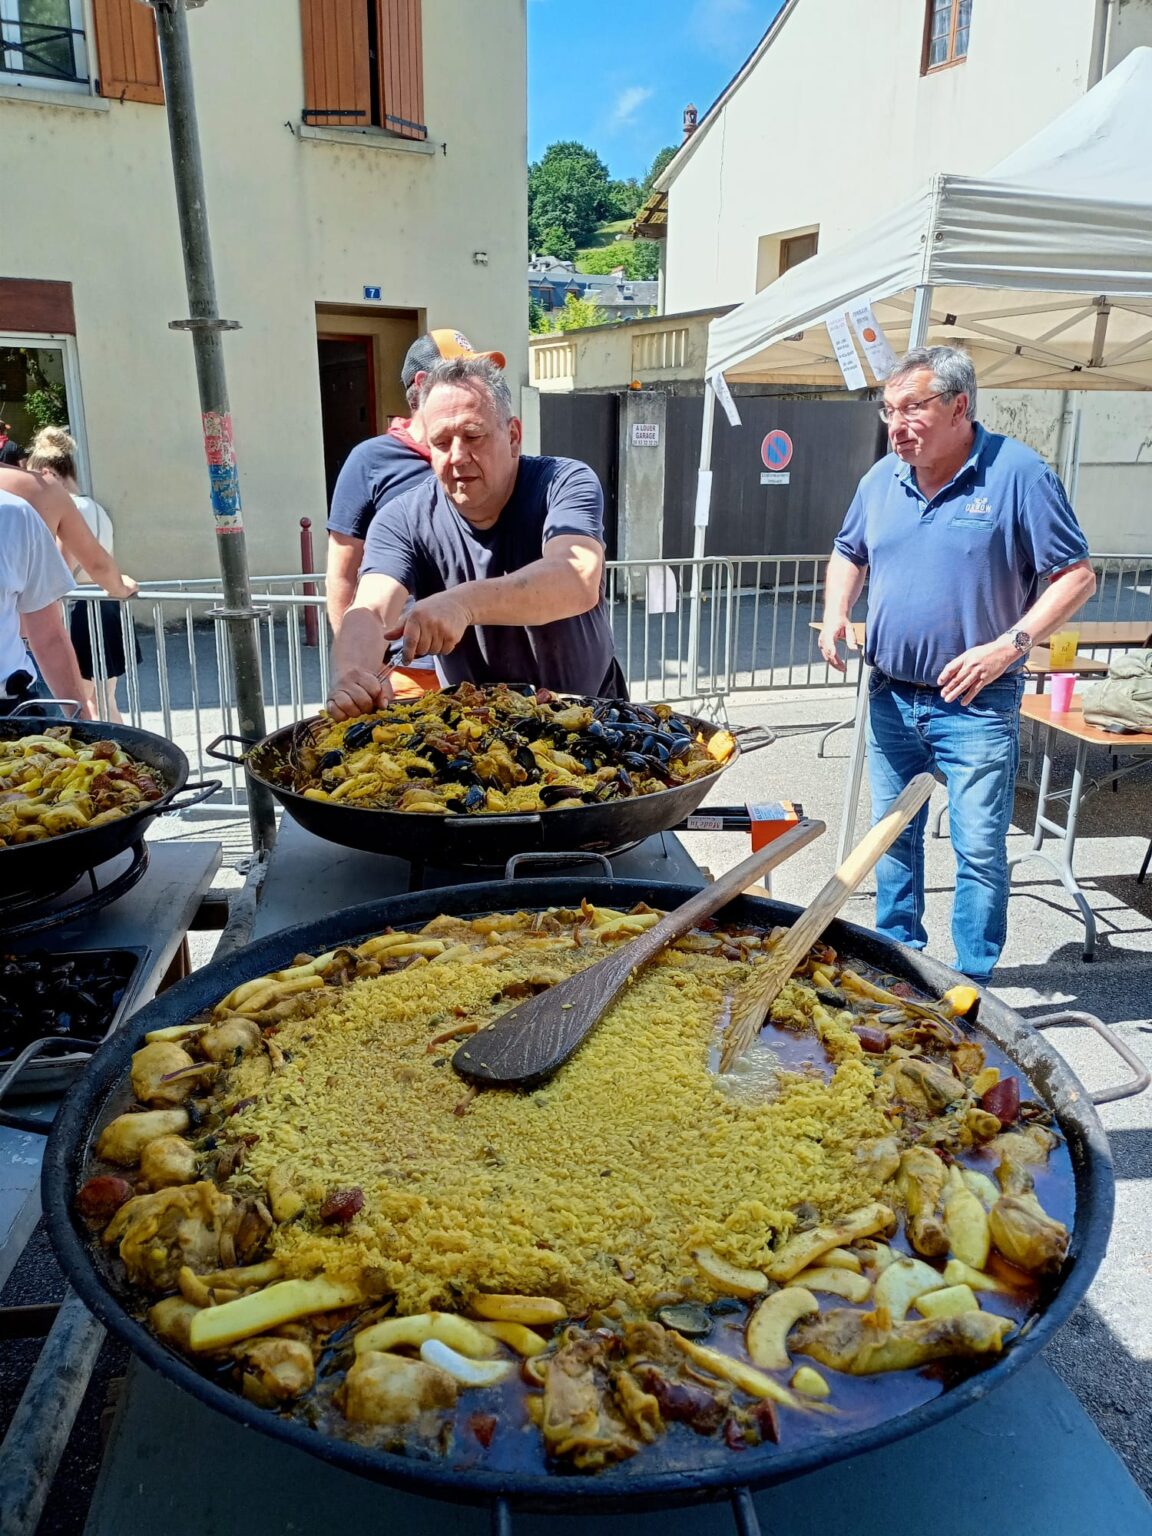 Festival paella